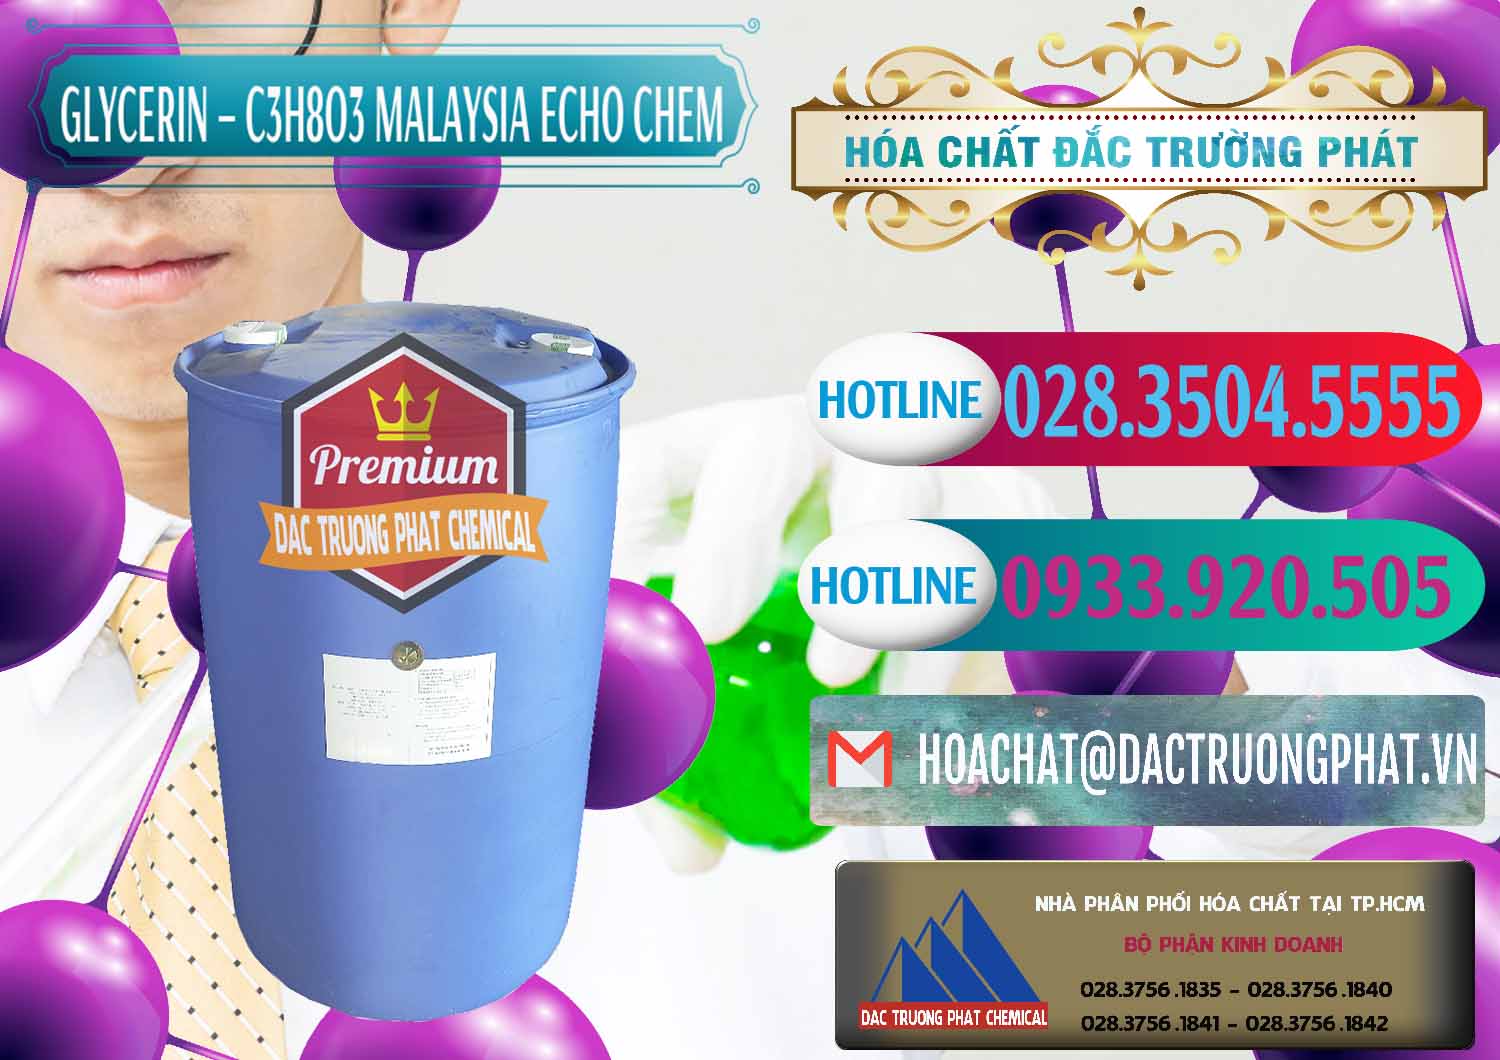 Công ty chuyên phân phối _ bán Glycerin – C3H8O3 99.7% Echo Chem Malaysia - 0273 - Nhà phân phối - cung cấp hóa chất tại TP.HCM - truongphat.vn